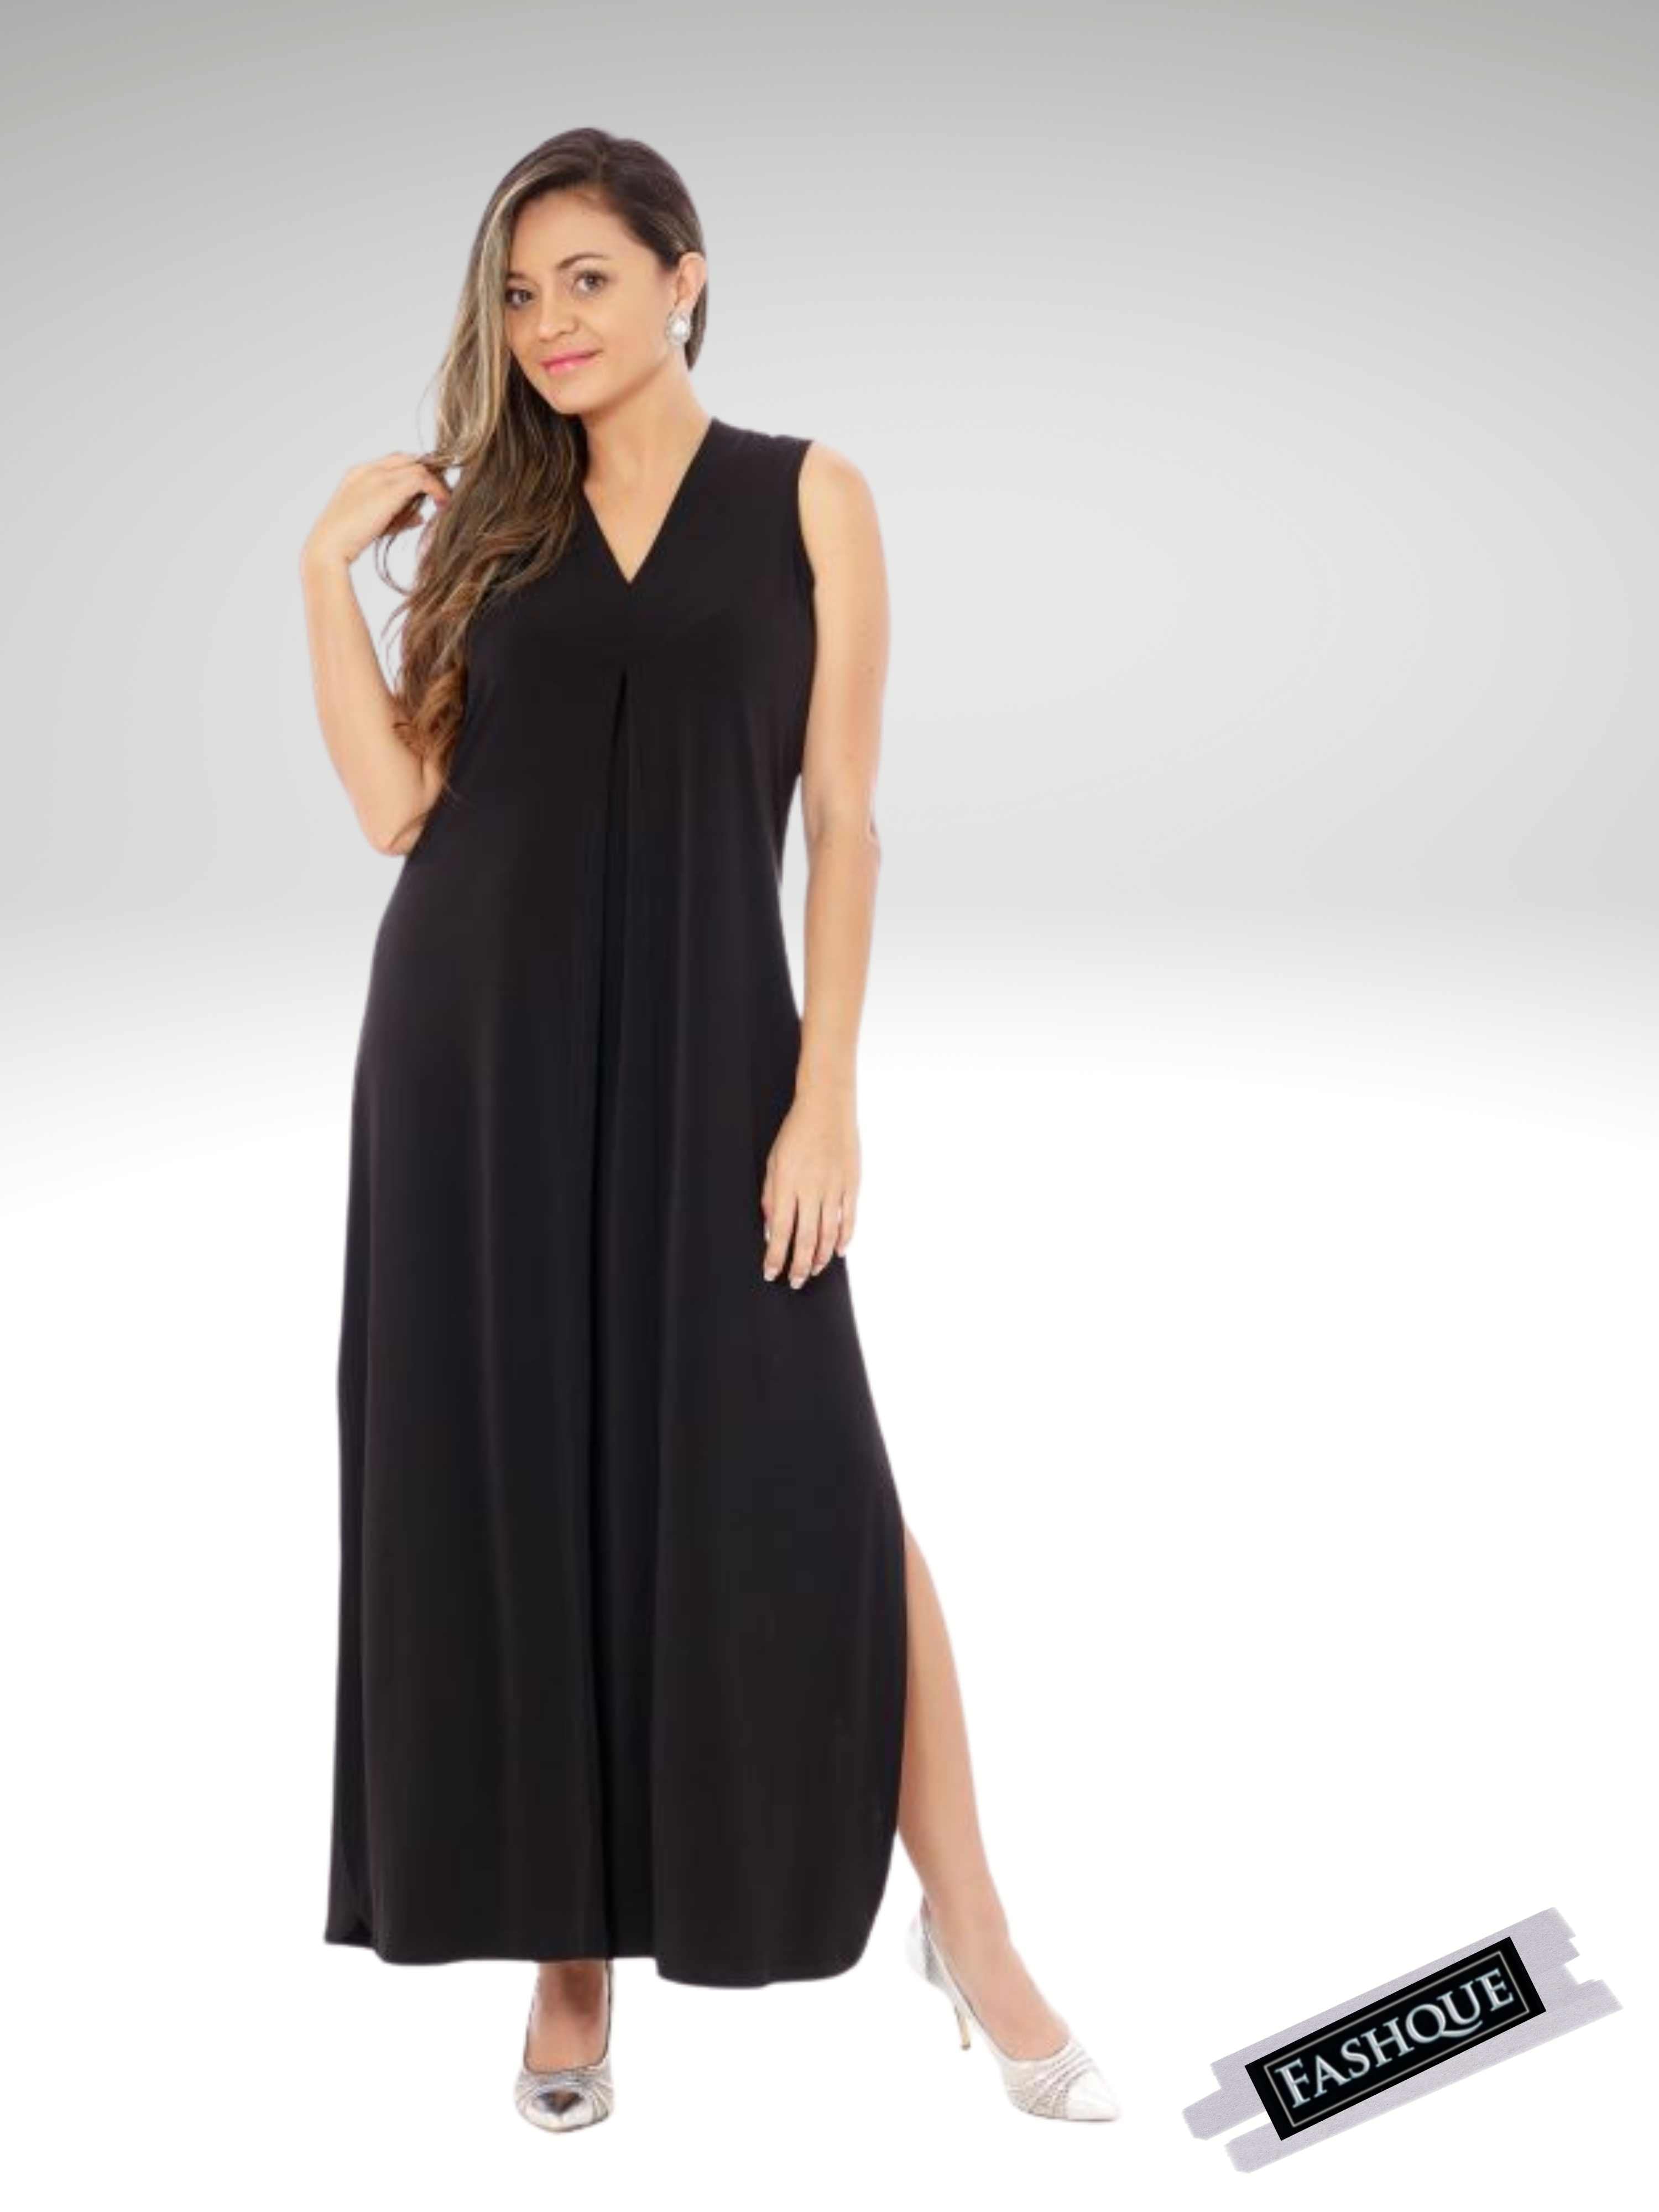 FASHQUE - Sheath Silhouette V-Neckline Side Slit Maxi Dress - D052